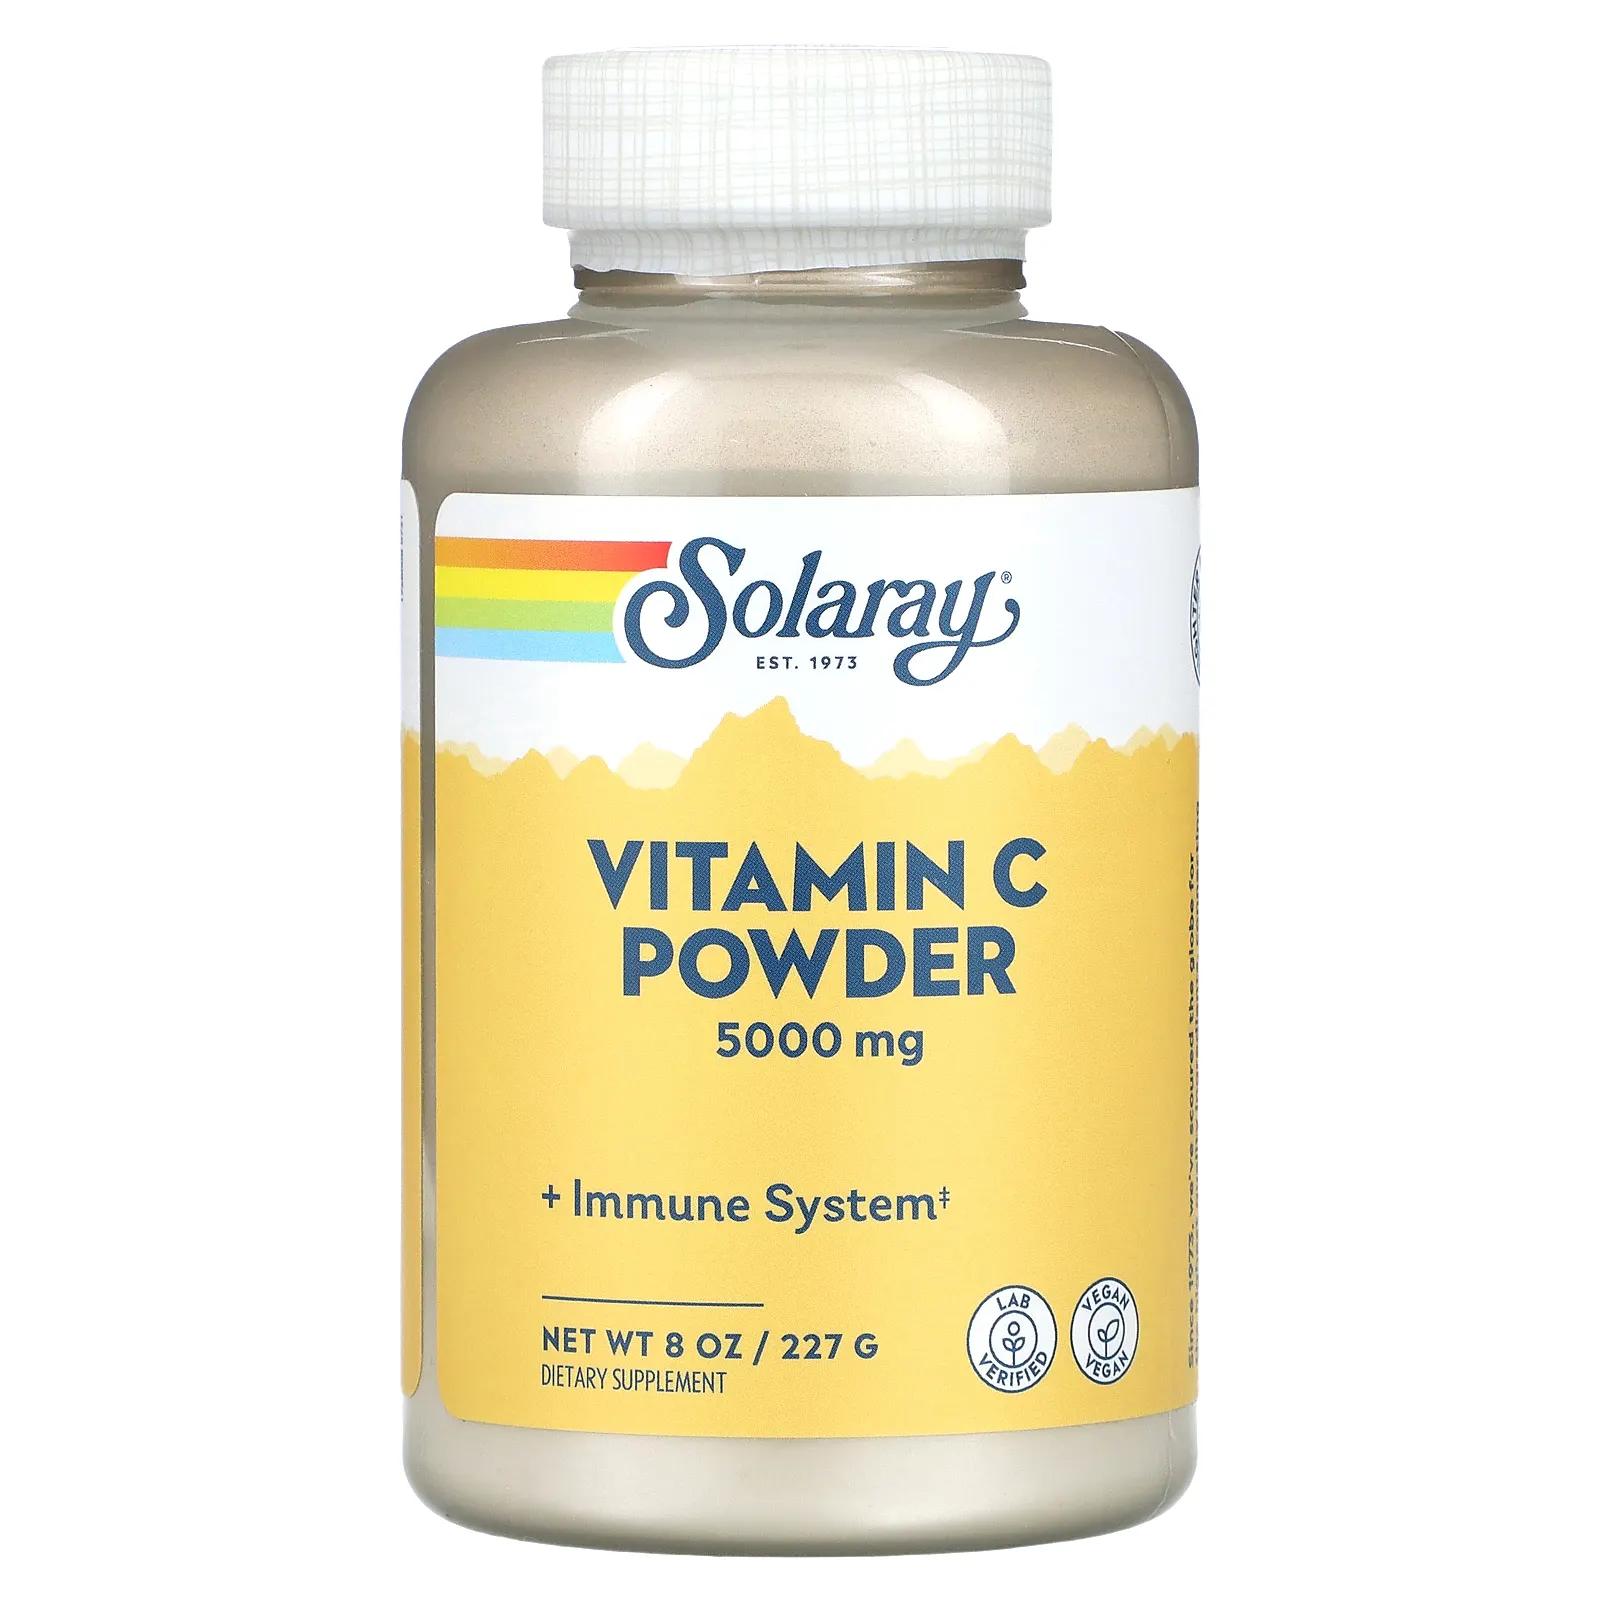 Solaray Витамин C в порошке 5000 мг 8 унц. (227 г) thompson витамин c в порошке 5000 мг 8 унций